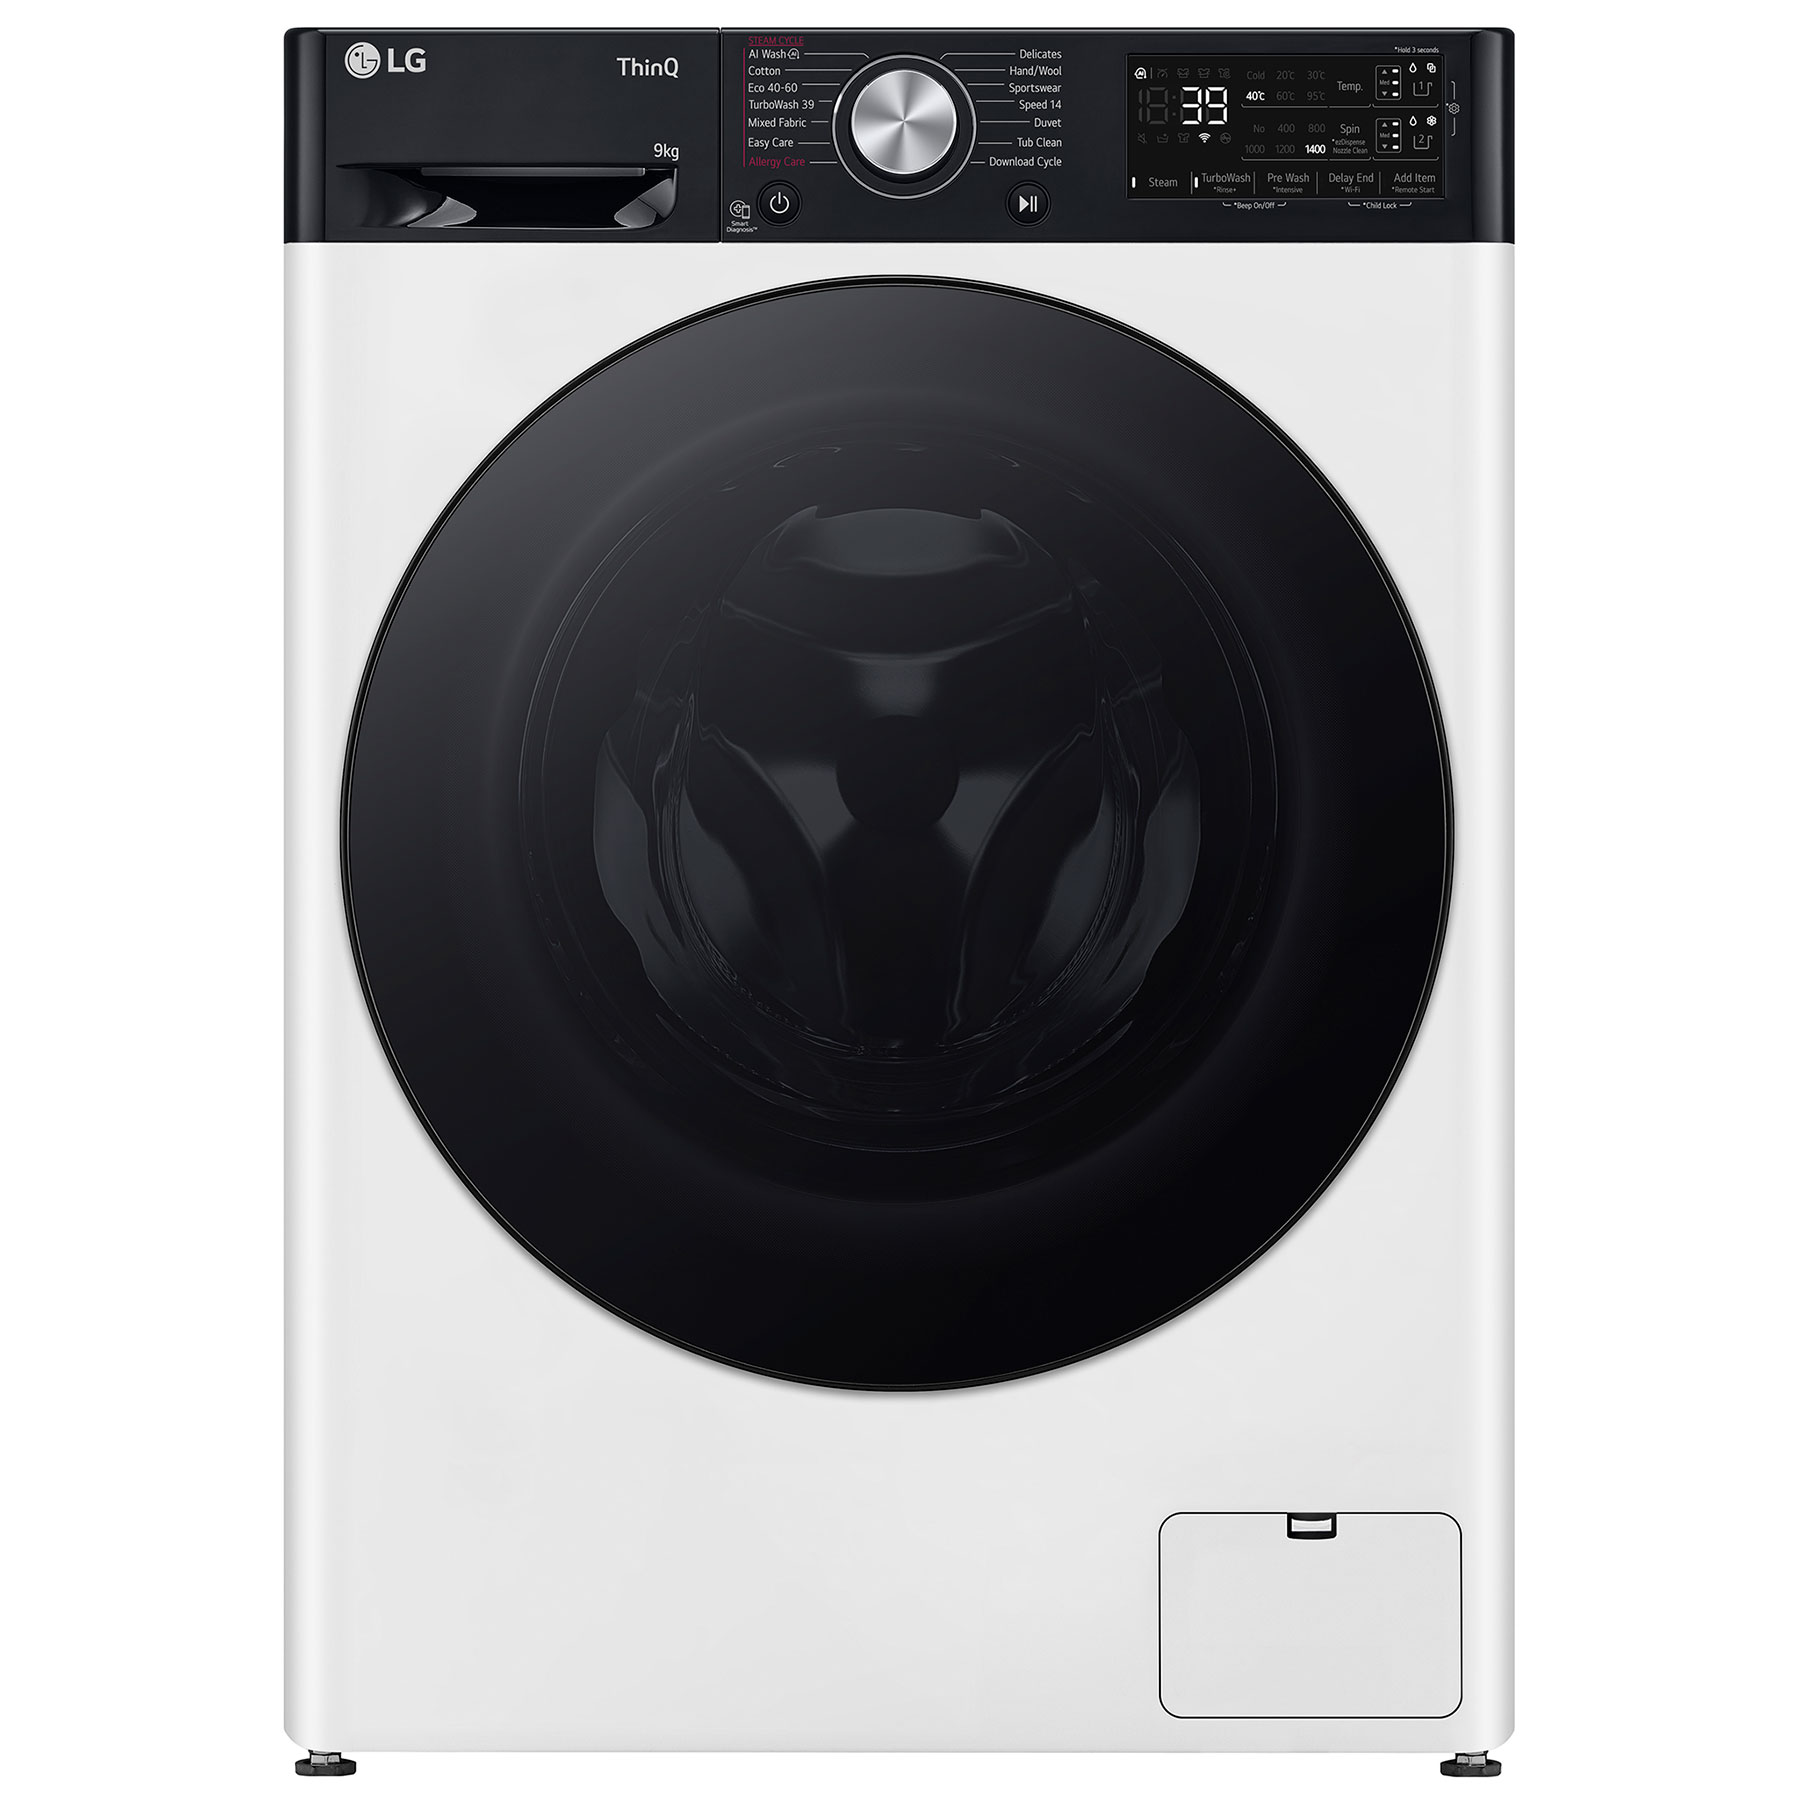 LG F4Y709WBTA1 Washing Machine in White 1400rpm 9kg A Rated Wi Fi